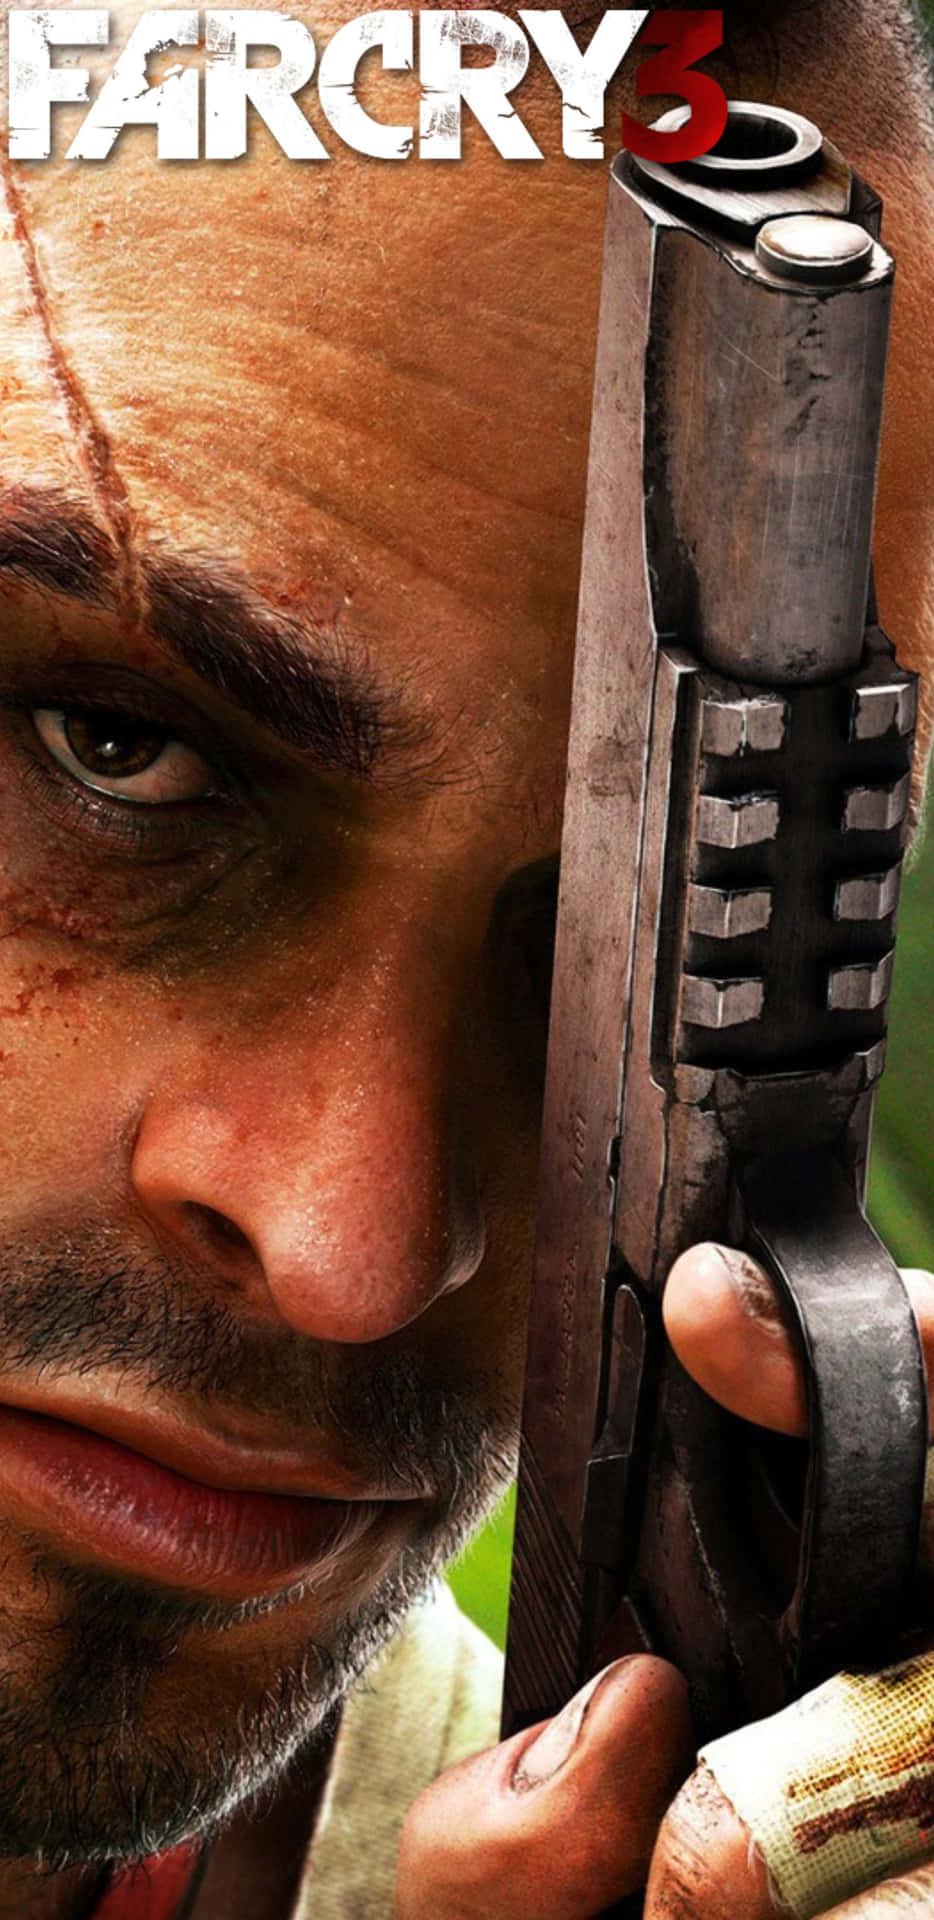 Upptäckvildmarken I Far Cry 3 På En Pixel 3xl Genom Att Välja Den Som Din Dator- Eller Mobilbakgrund.